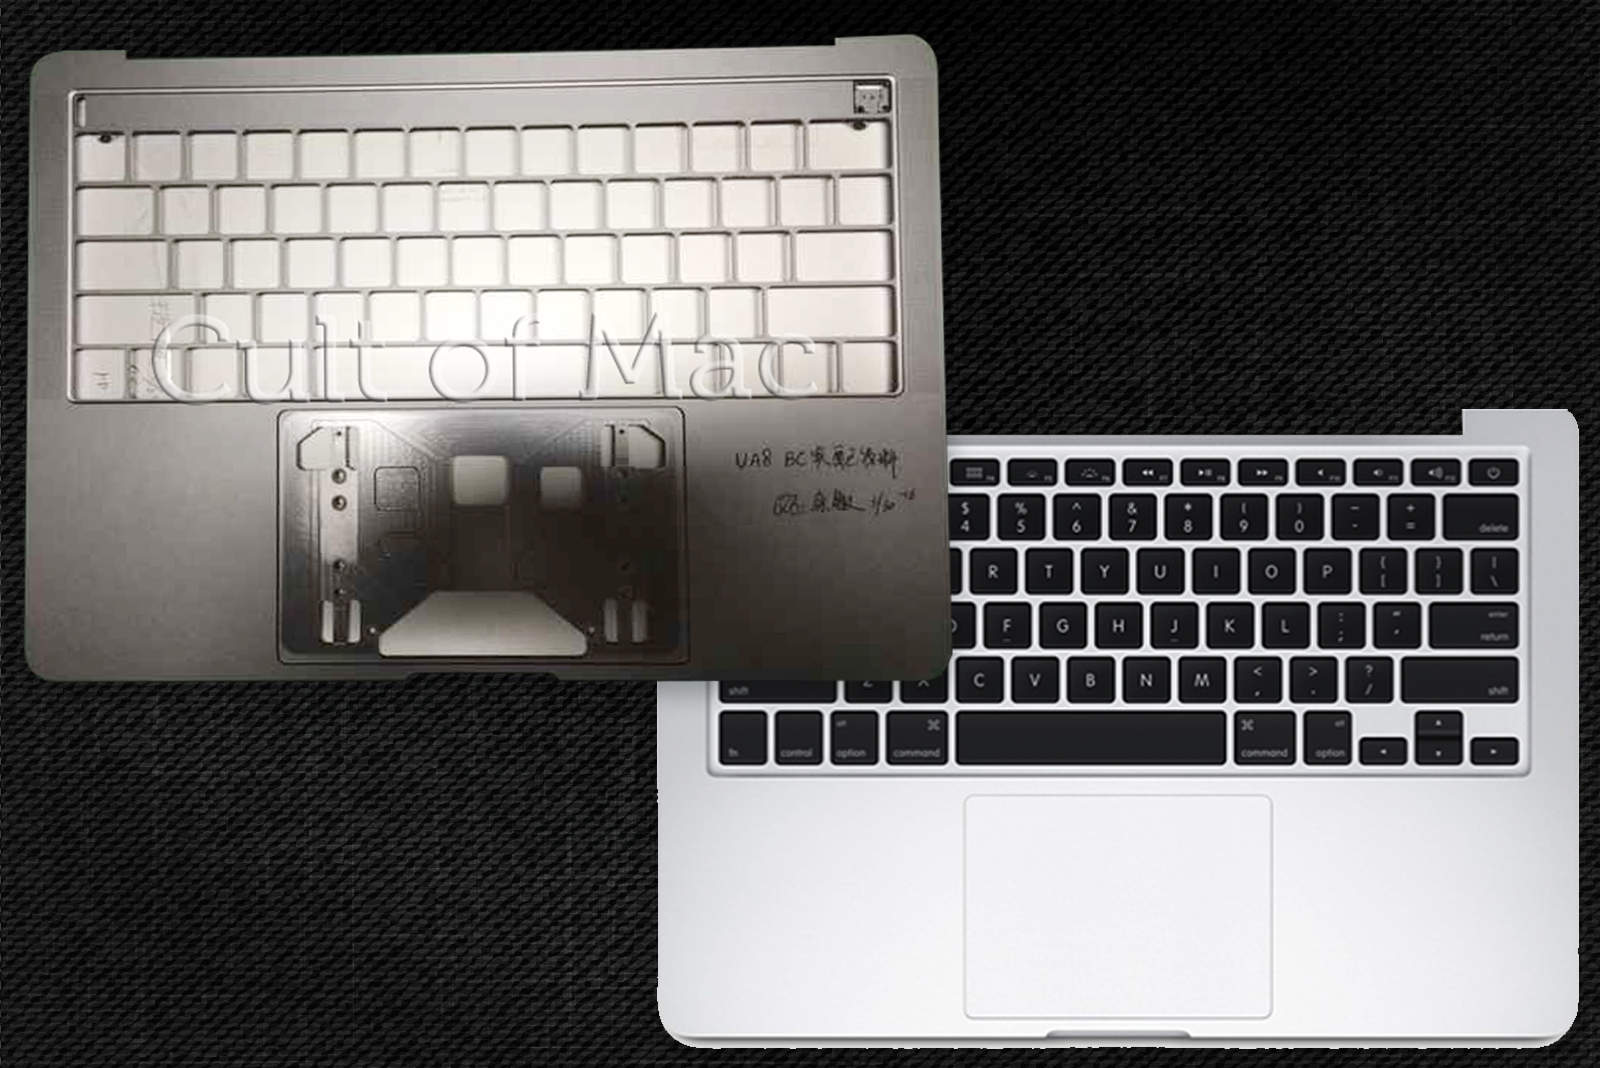 Alleged MacBook Pro case